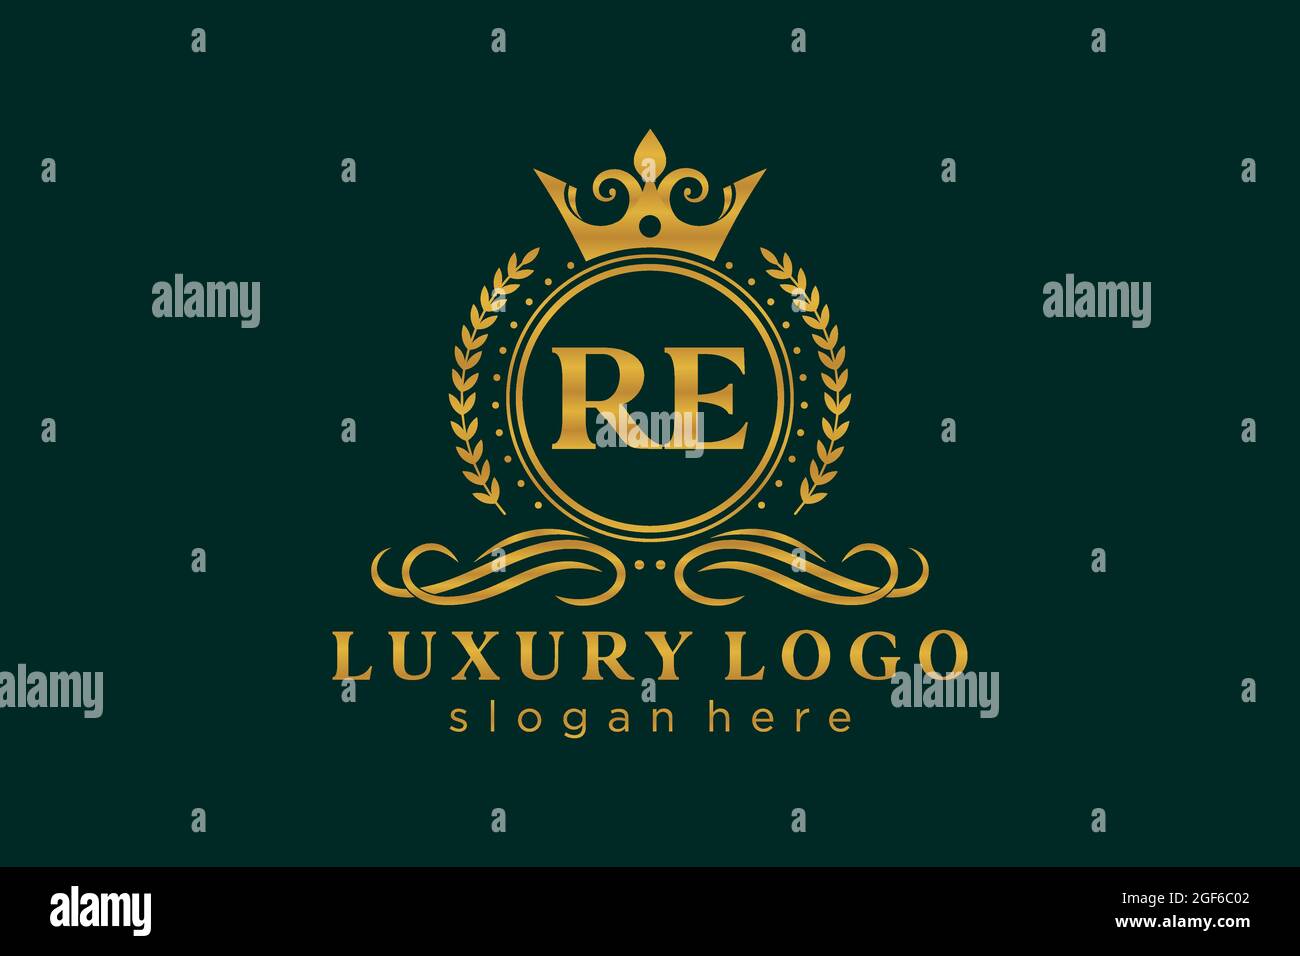 RE Letter Royal Luxury Logo Vorlage in Vektorgrafik für Restaurant, Royalty, Boutique, Cafe, Hotel, Heraldisch, Schmuck, Mode und andere Vektor illustrr Stock Vektor